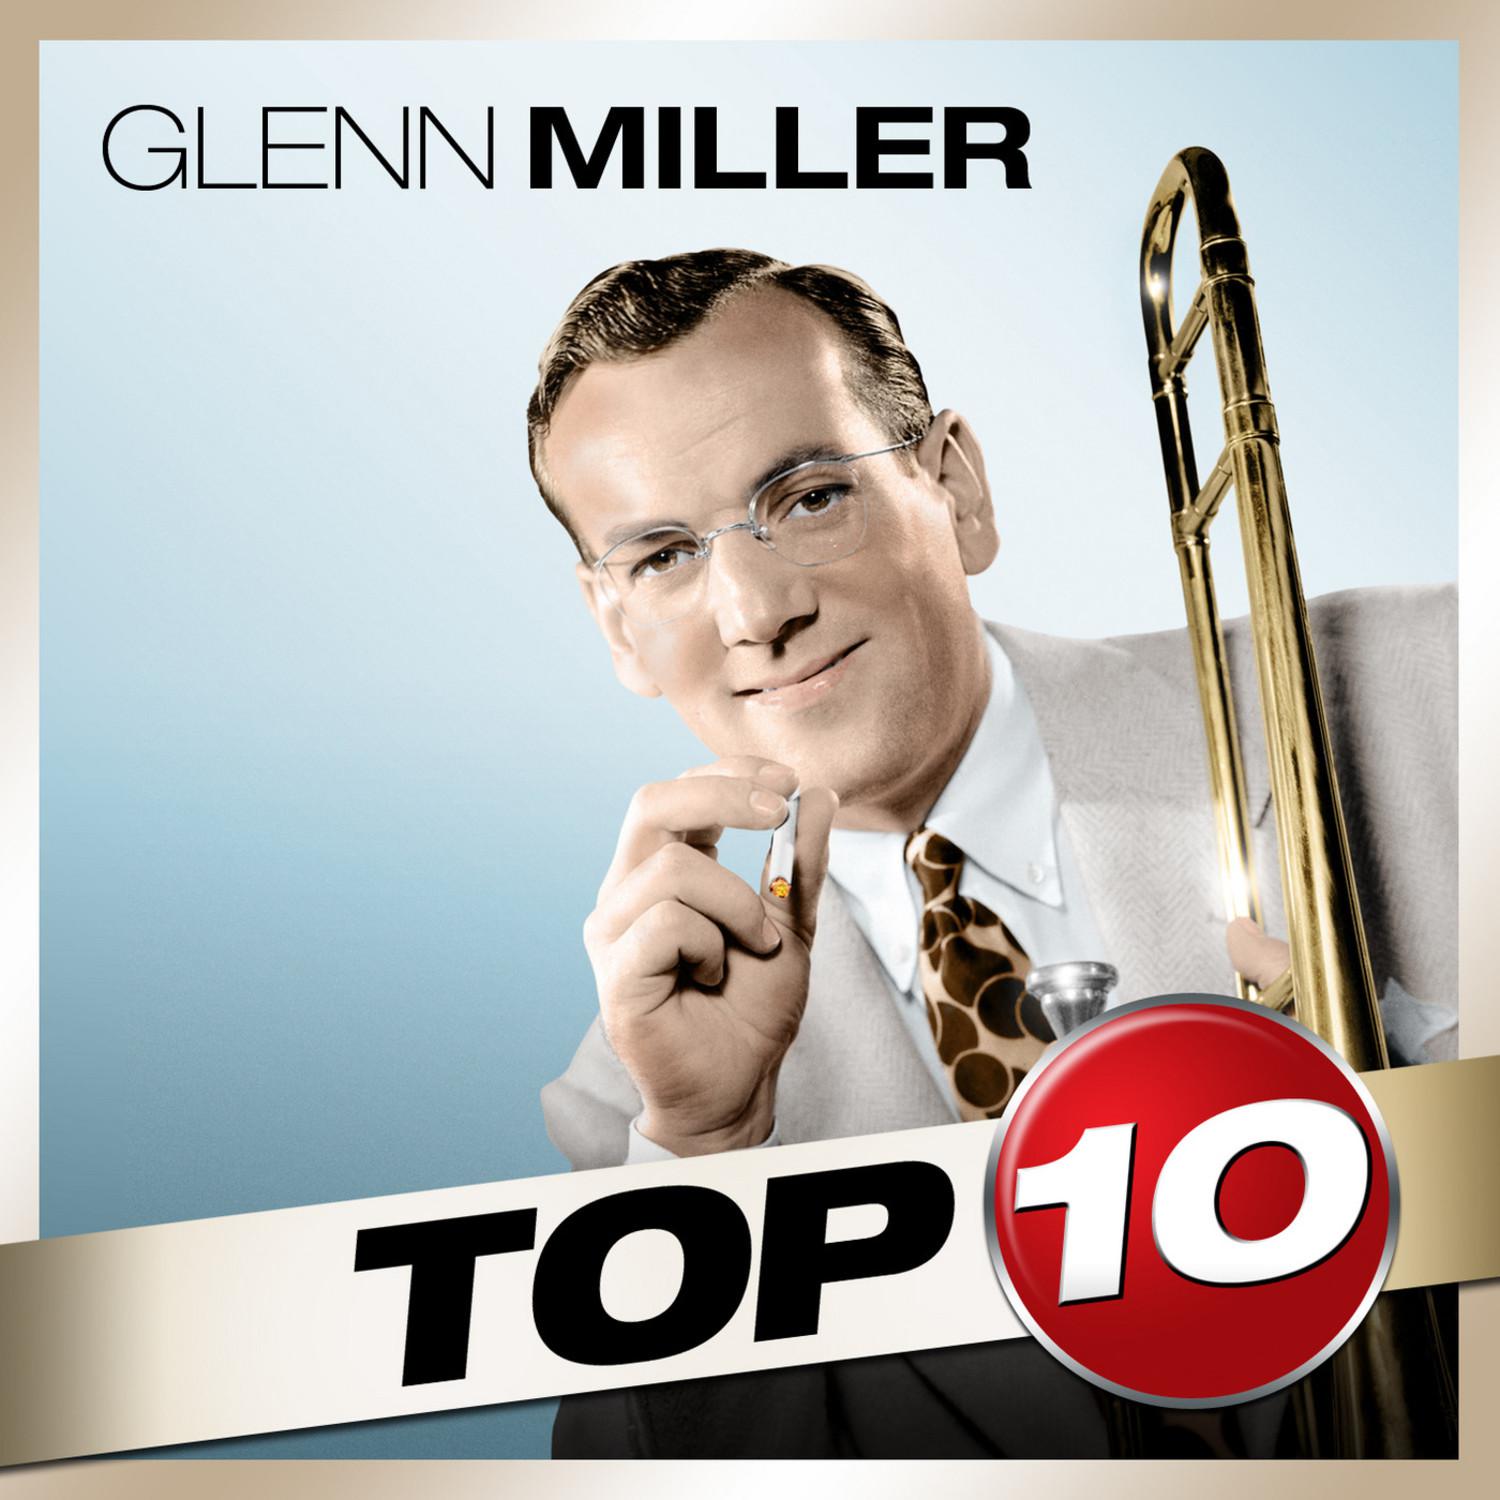 Top 10 - Glenn Miller